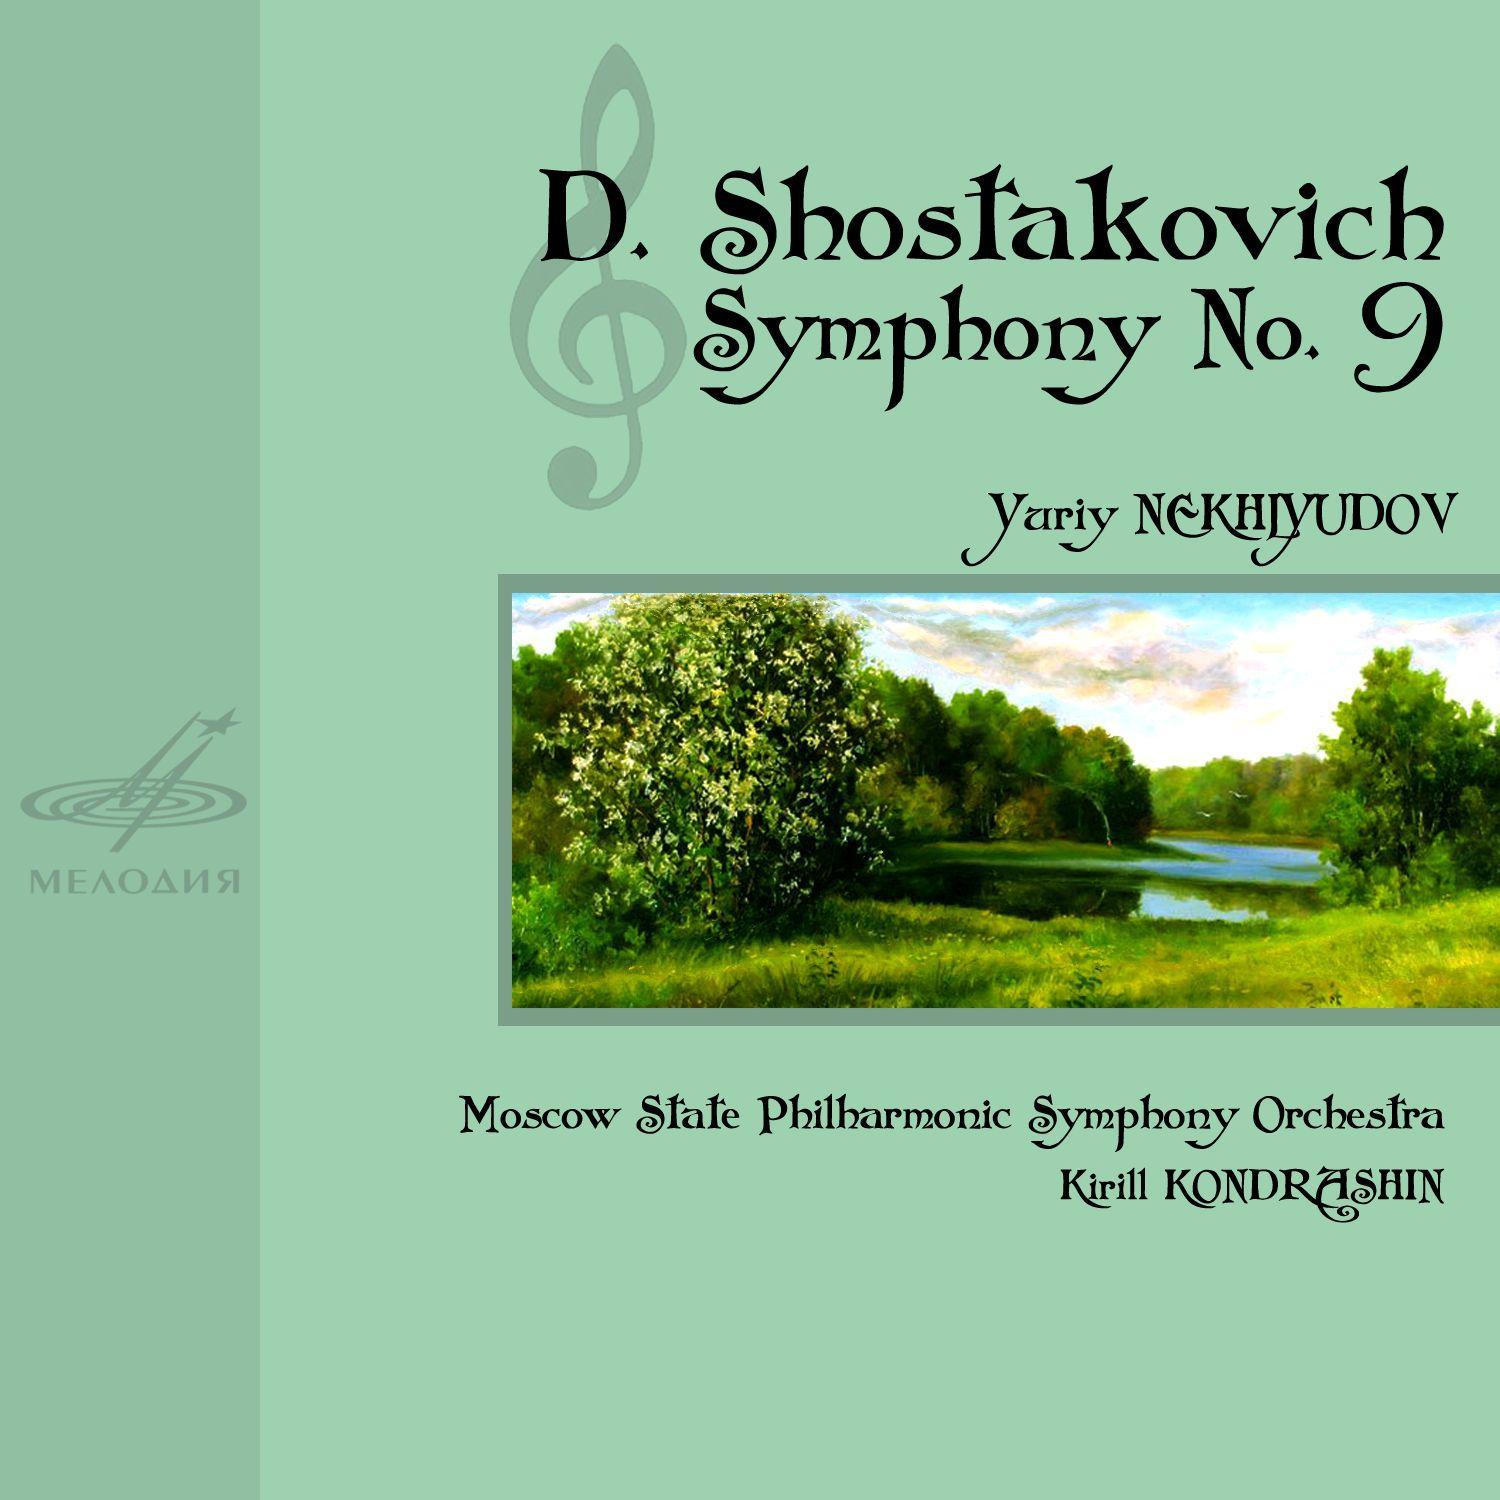 Symphony No. 9 in E-Flat Major, Op. 70: III. Presto - Largo - Allegretto